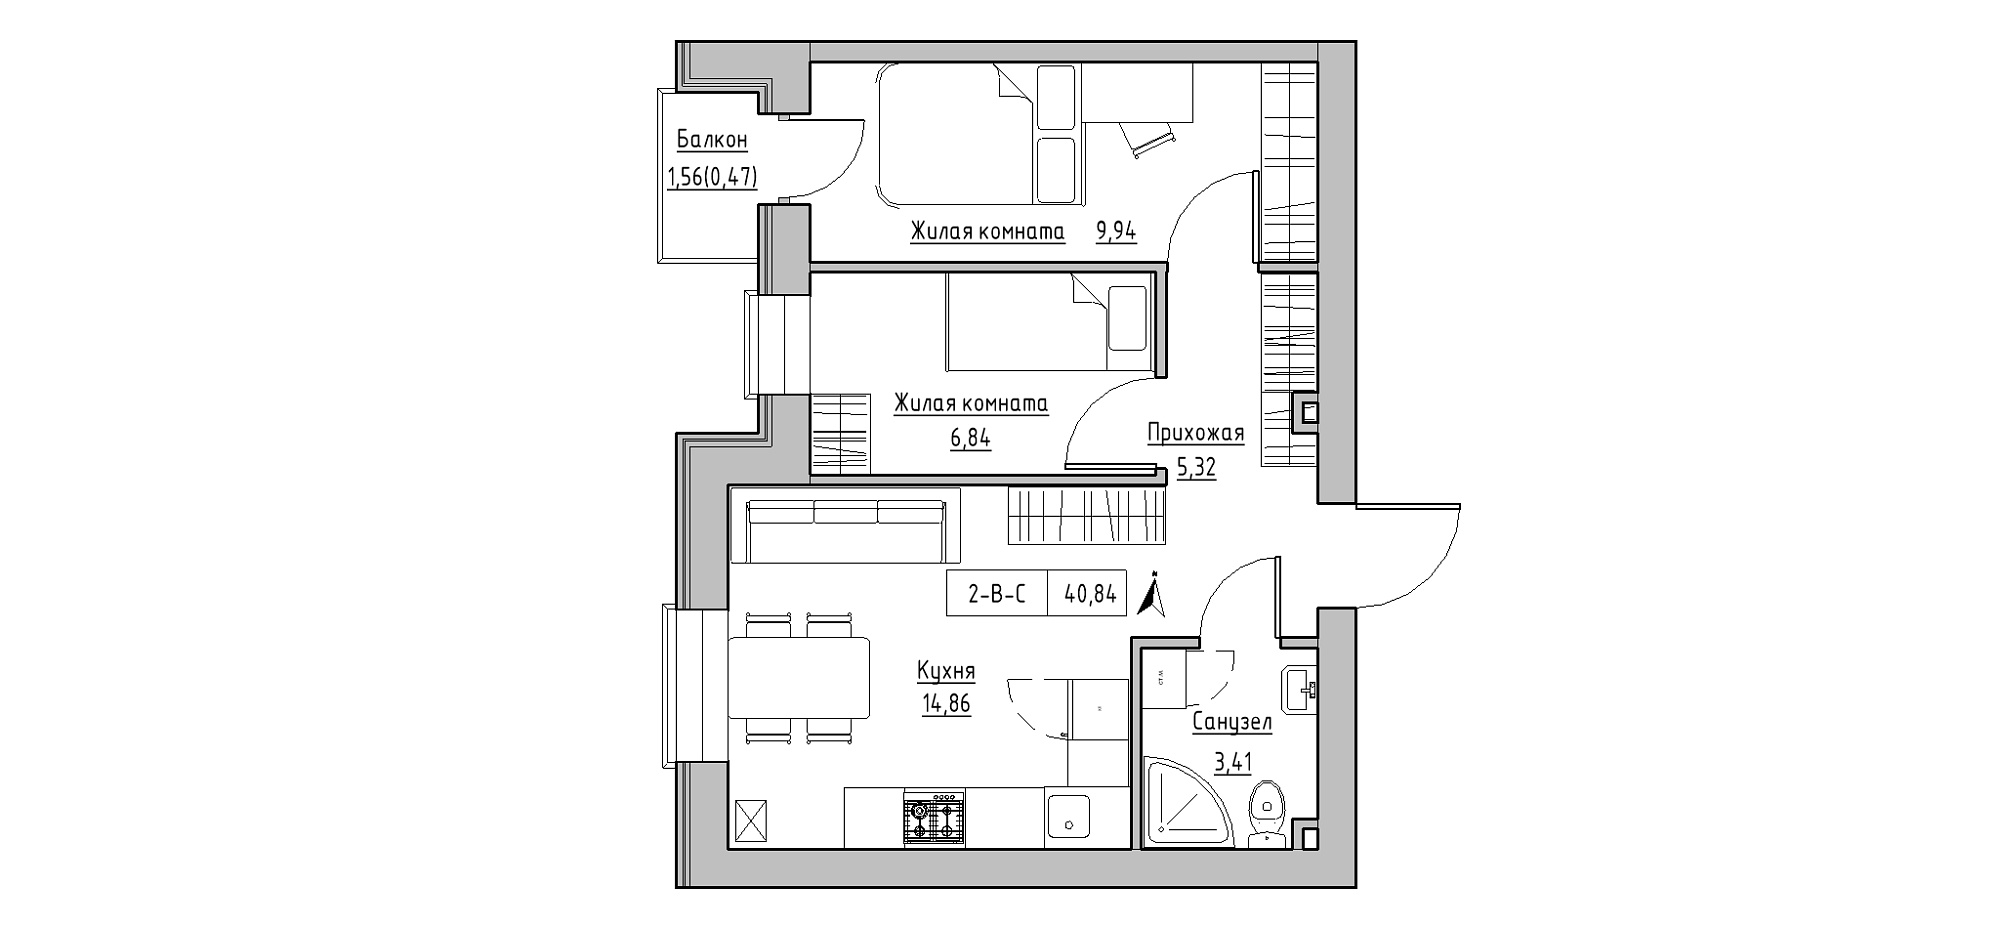 Планировка 2-к квартира площей 40.84м2, KS-020-03/0010.